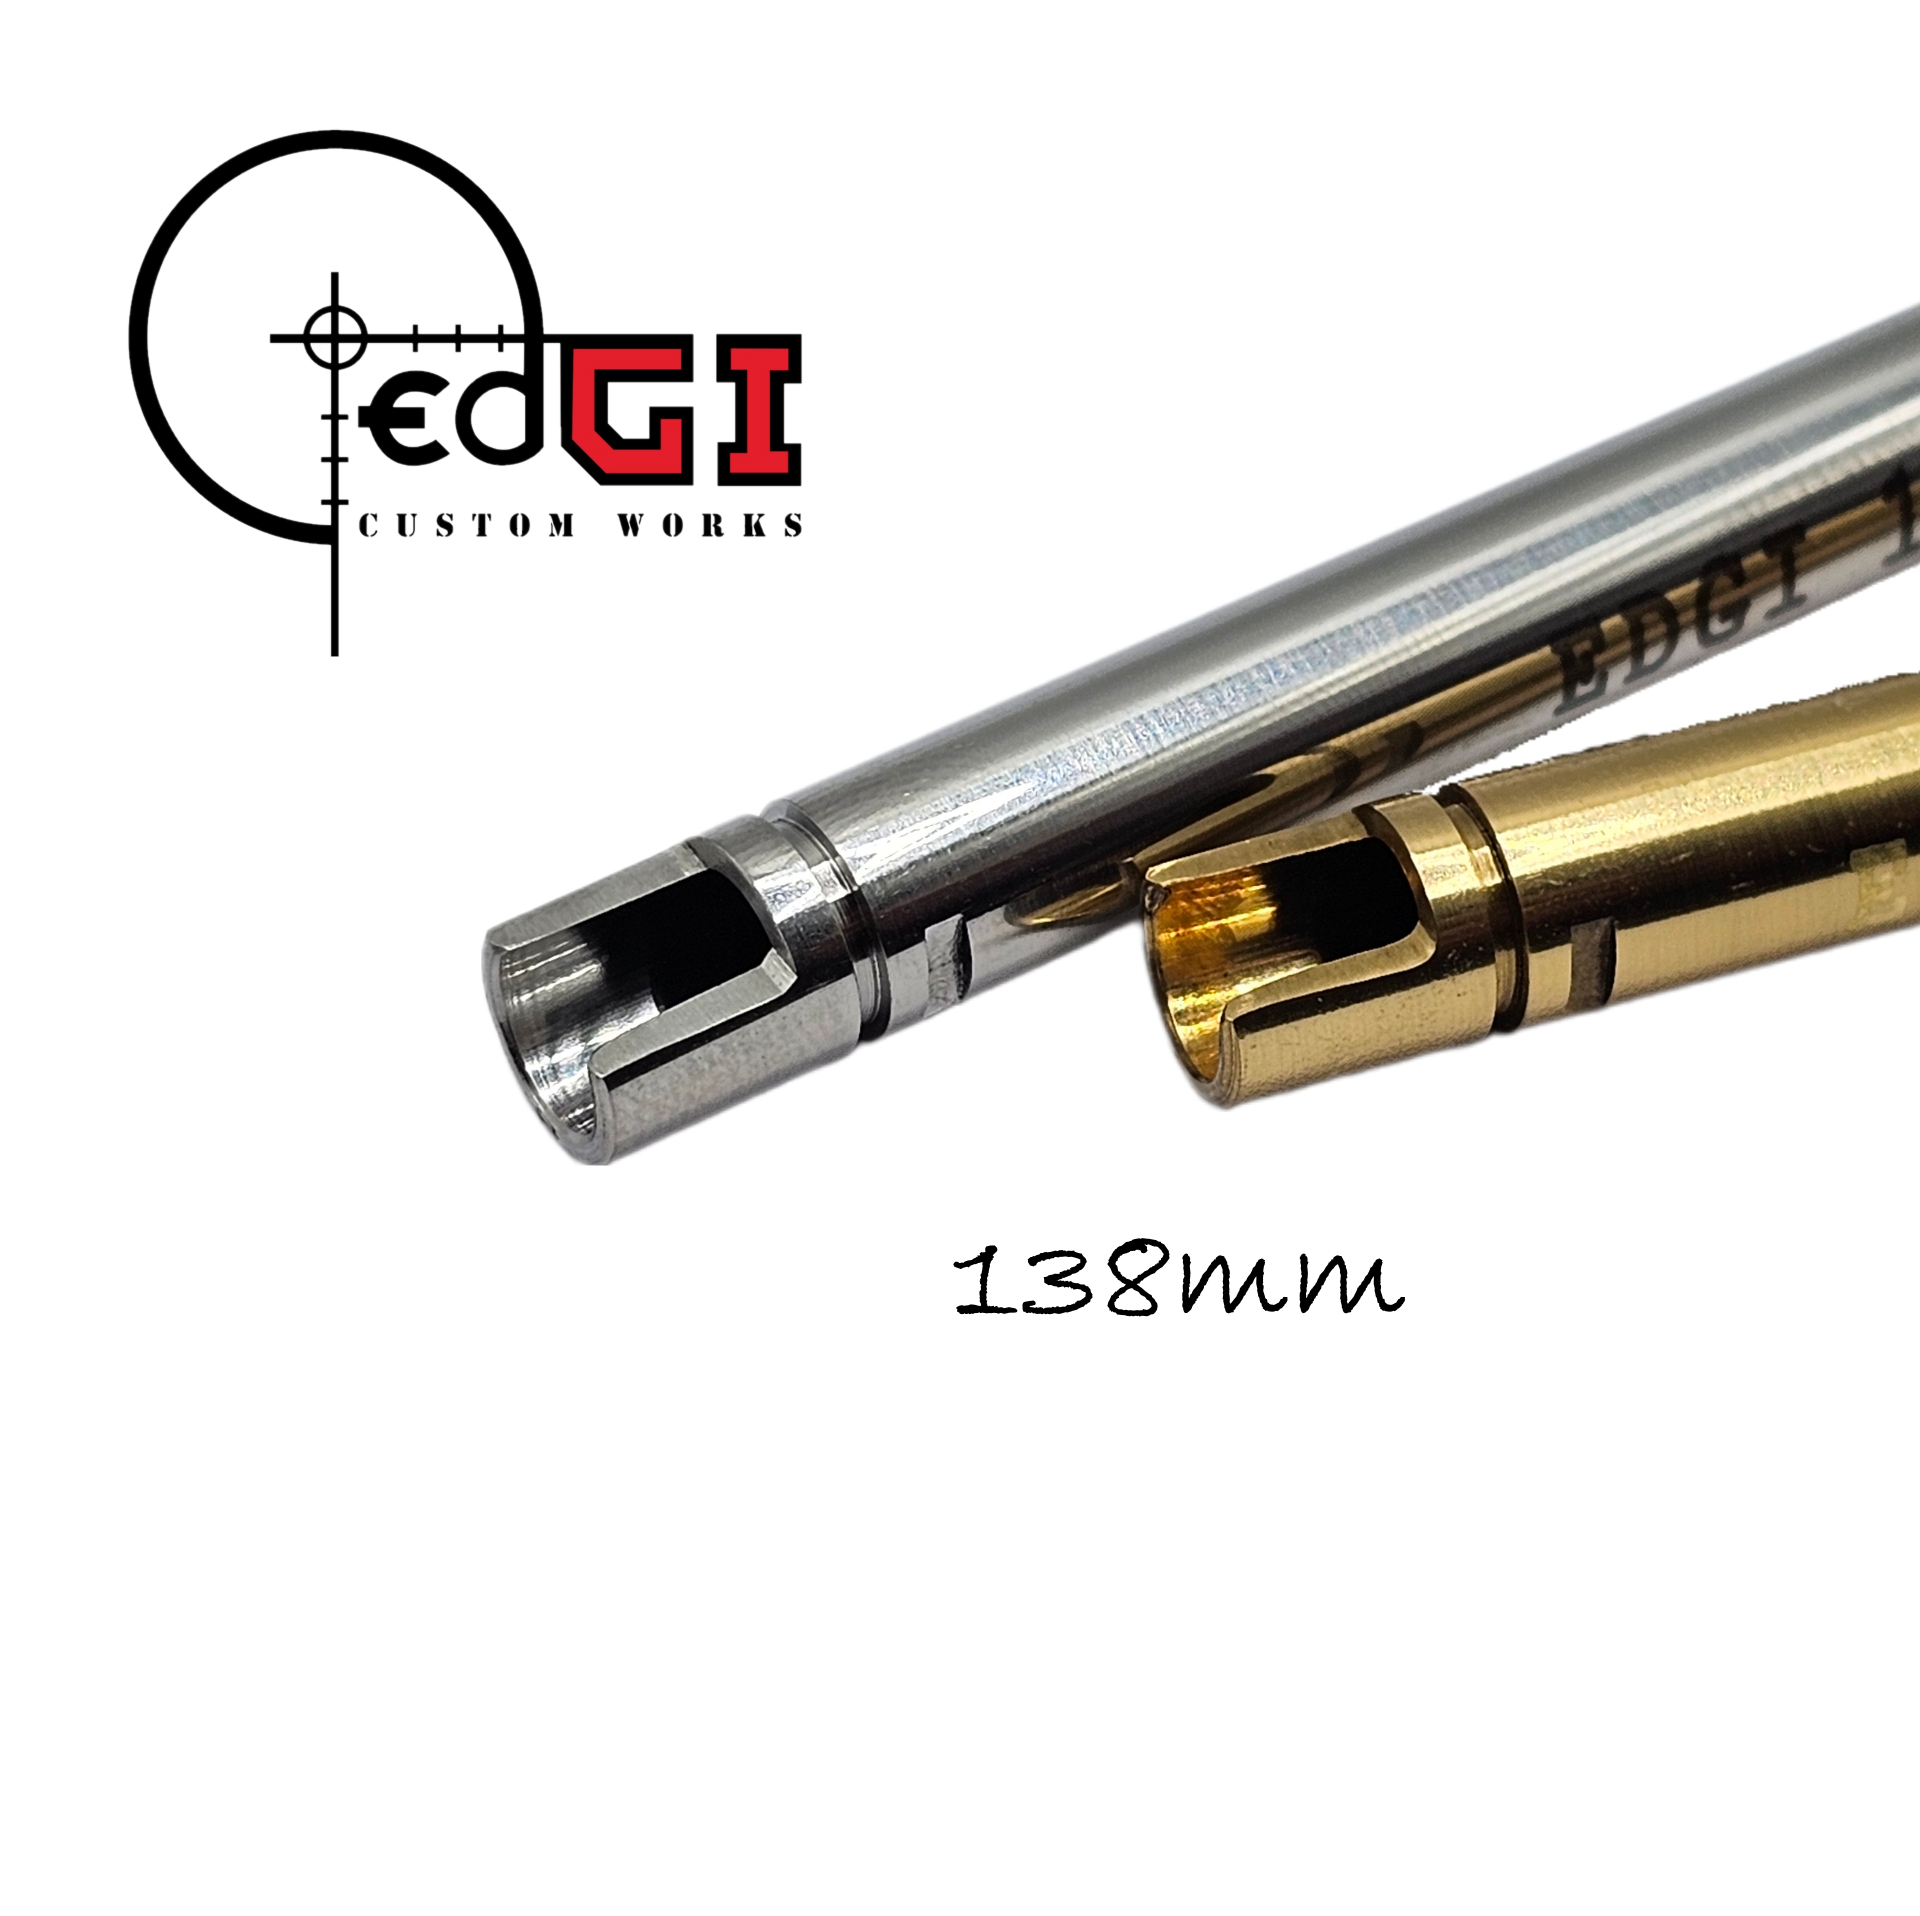 Edgi Custom Works - 138mm GBB Inner Barrel